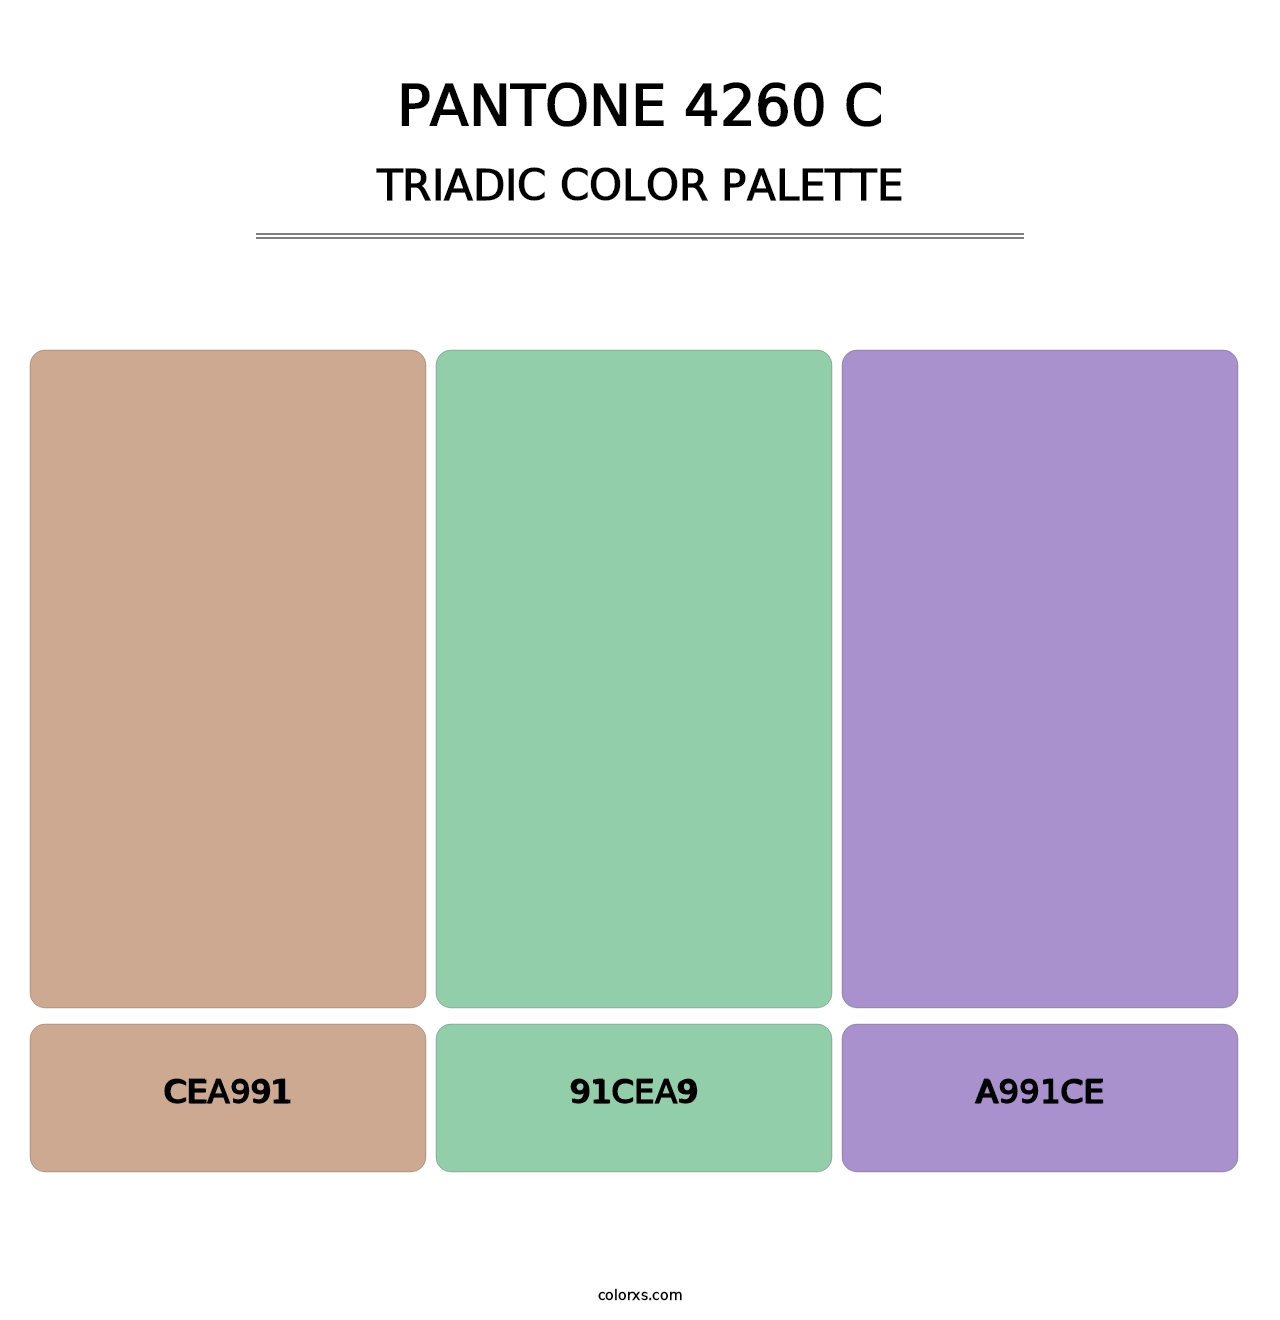 PANTONE 4260 C - Triadic Color Palette